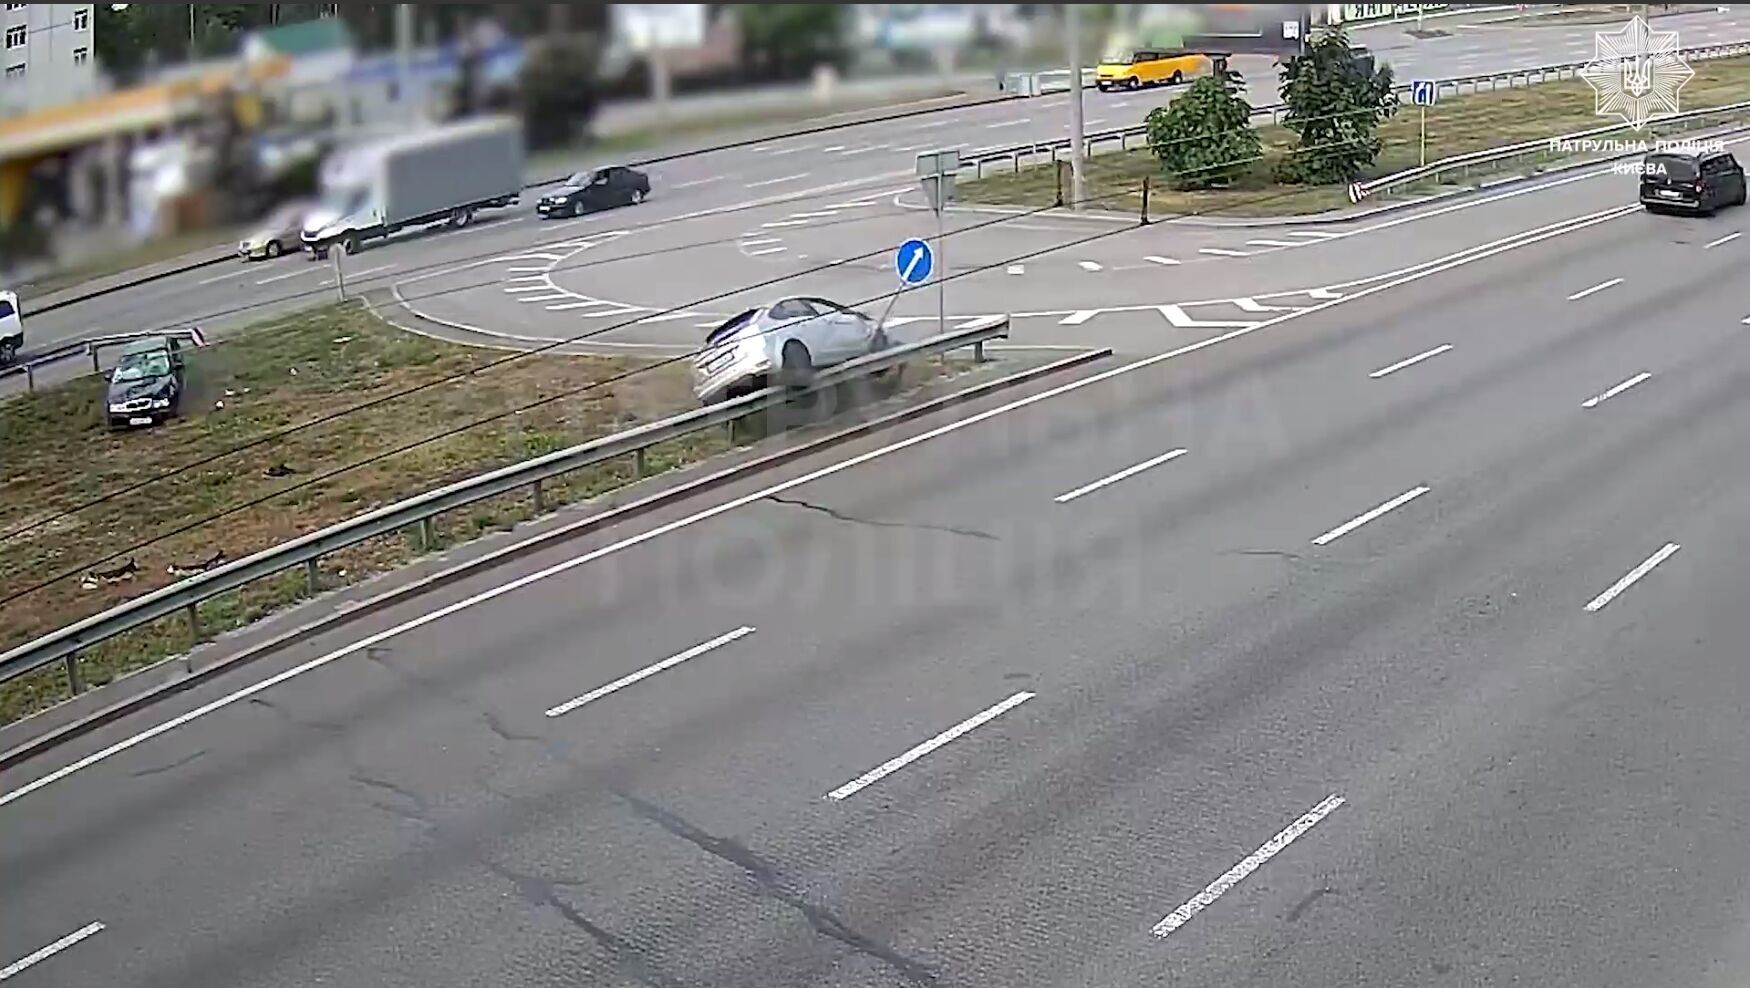 Авто несколько раз перевернулось: появилось видео момента ДТП на Окружной дороге в Киеве